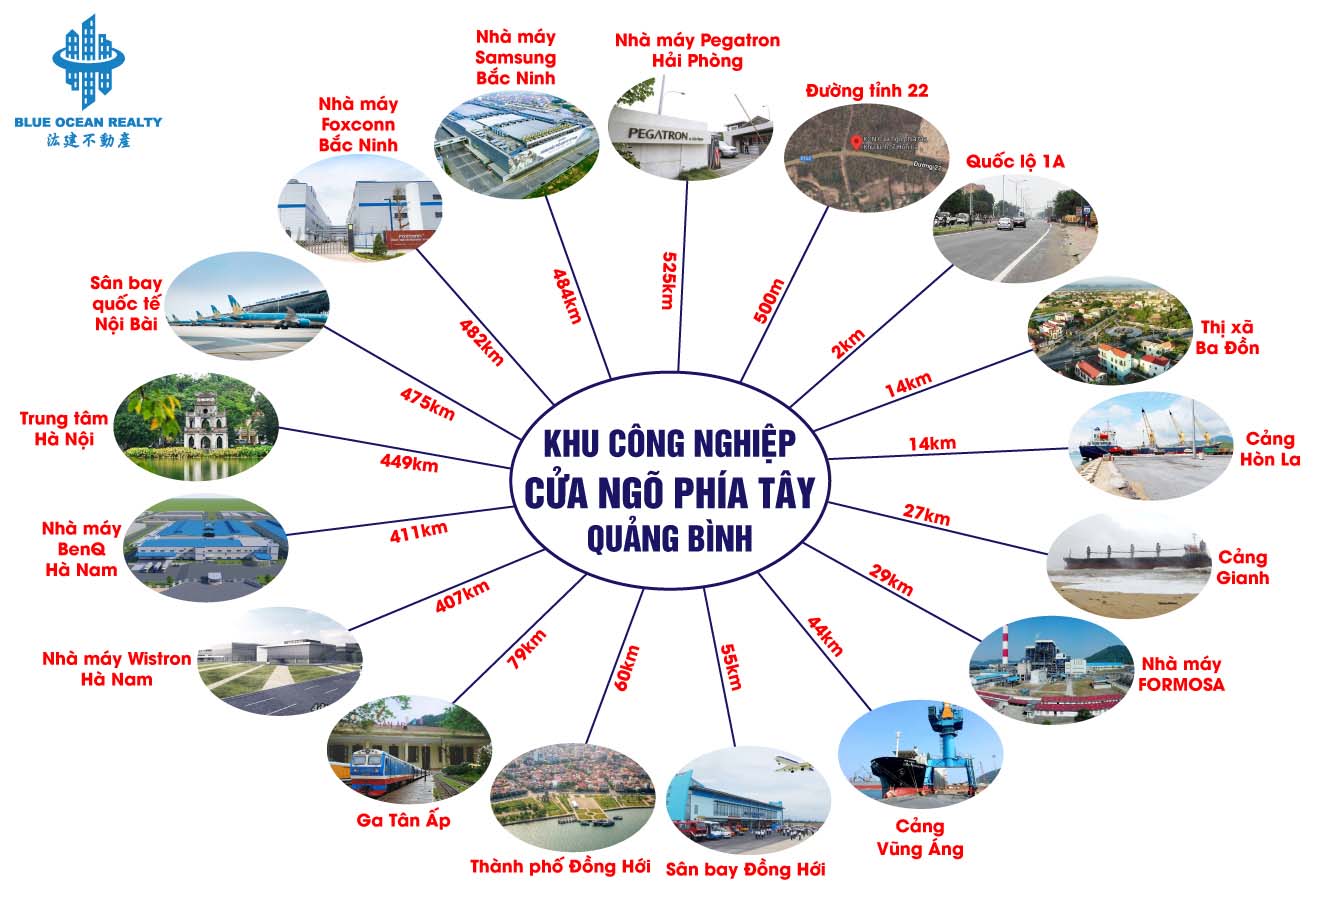 KCN Cửa ngõ phía Tây tỉnh Quảng Bình